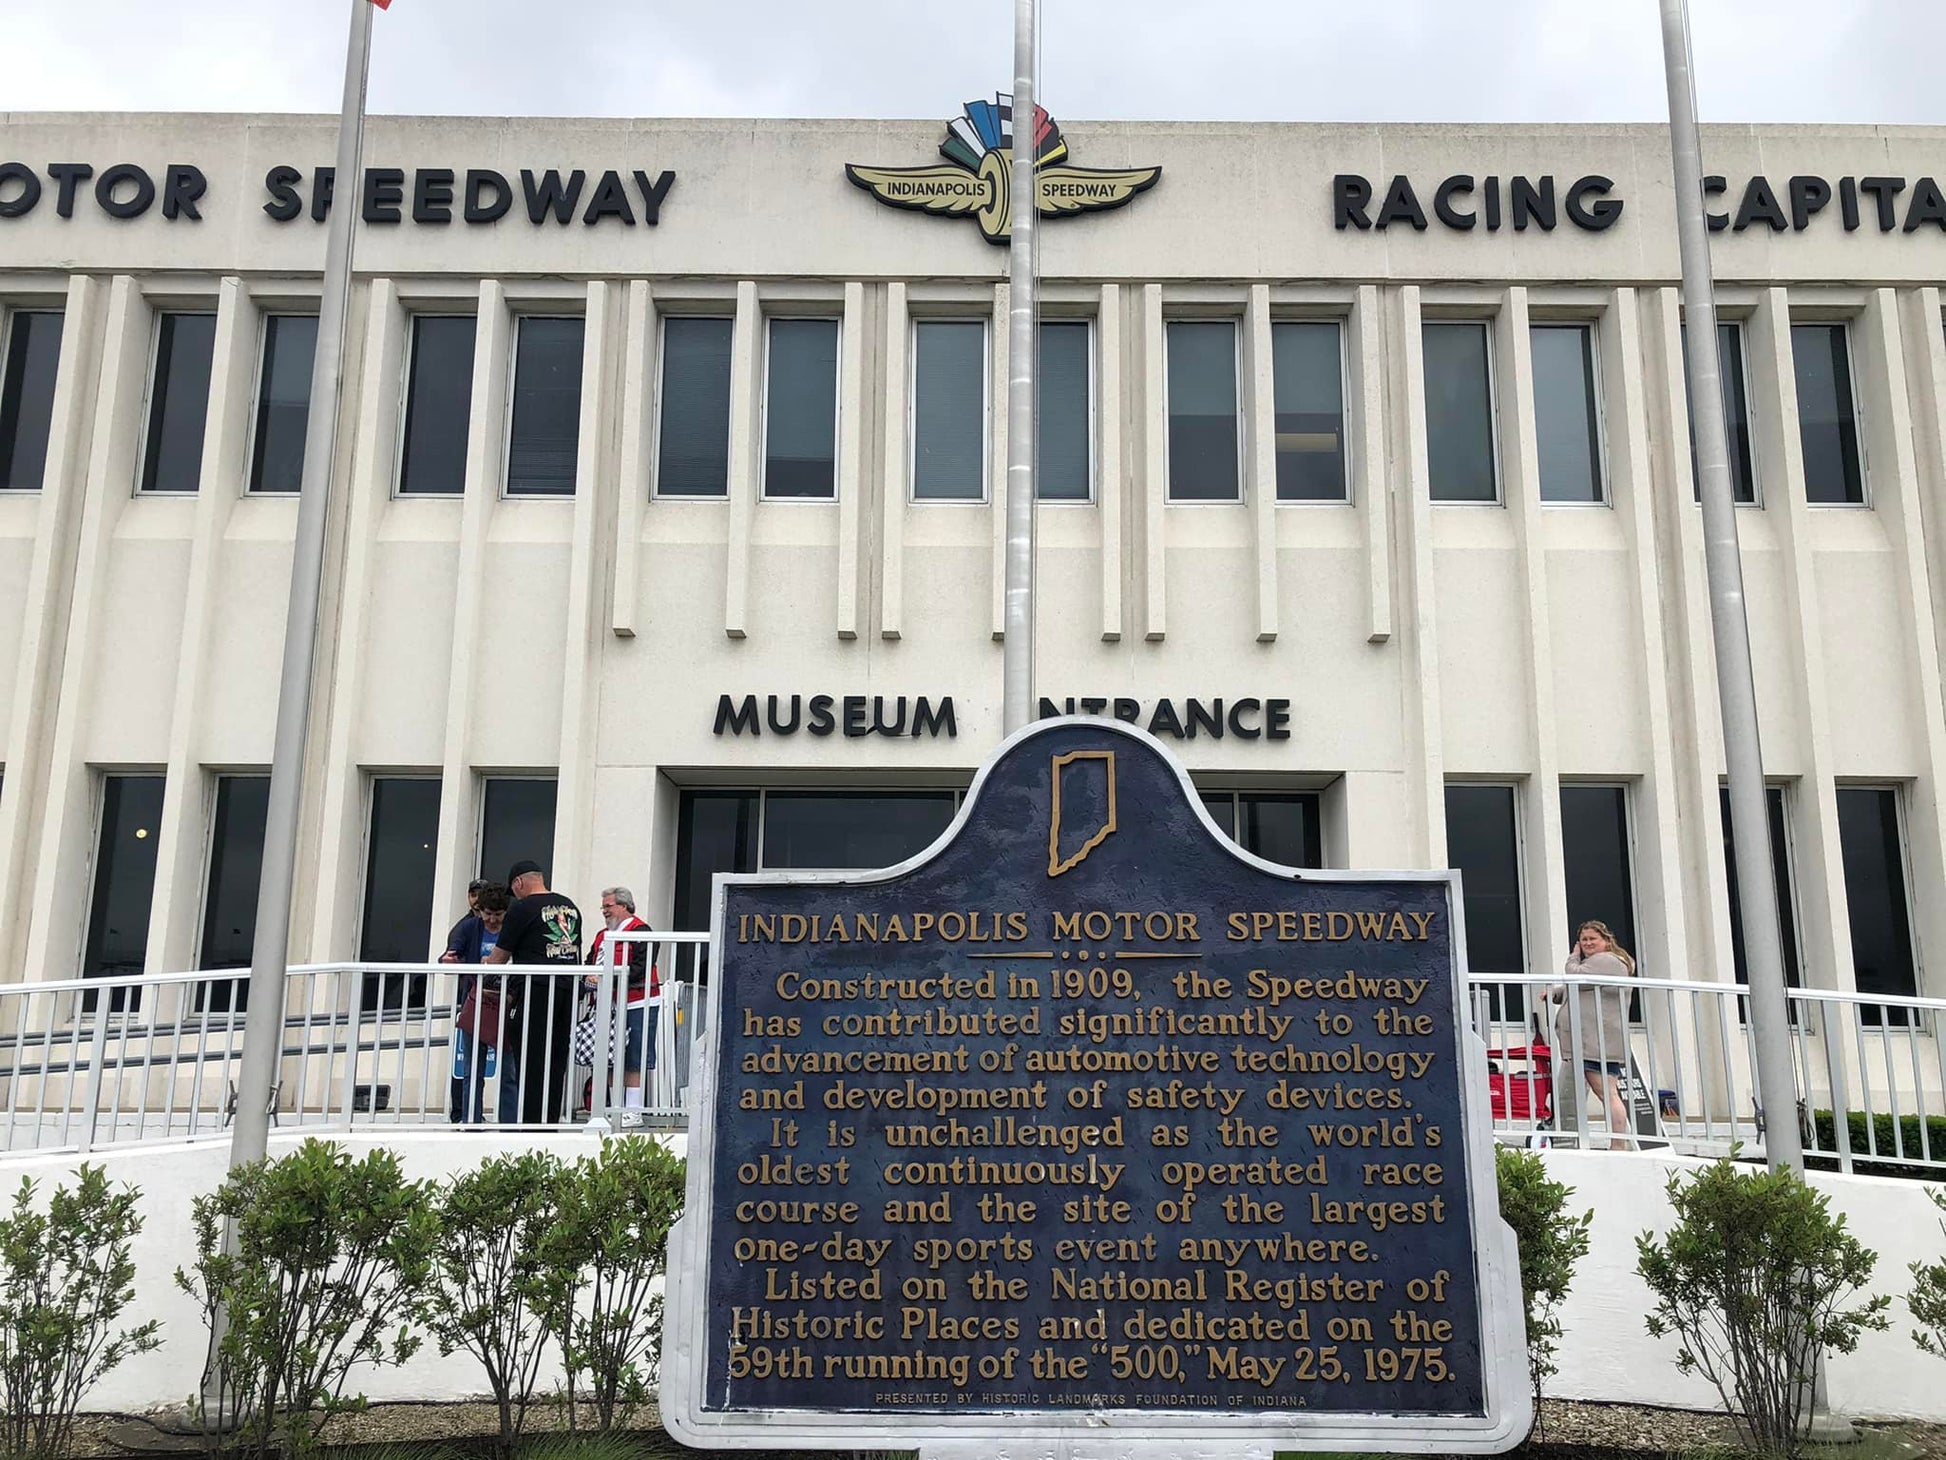 Indianapolis Motor Speedway Museum ! Un superbe musée à découvrir avant l'Indy 500 !